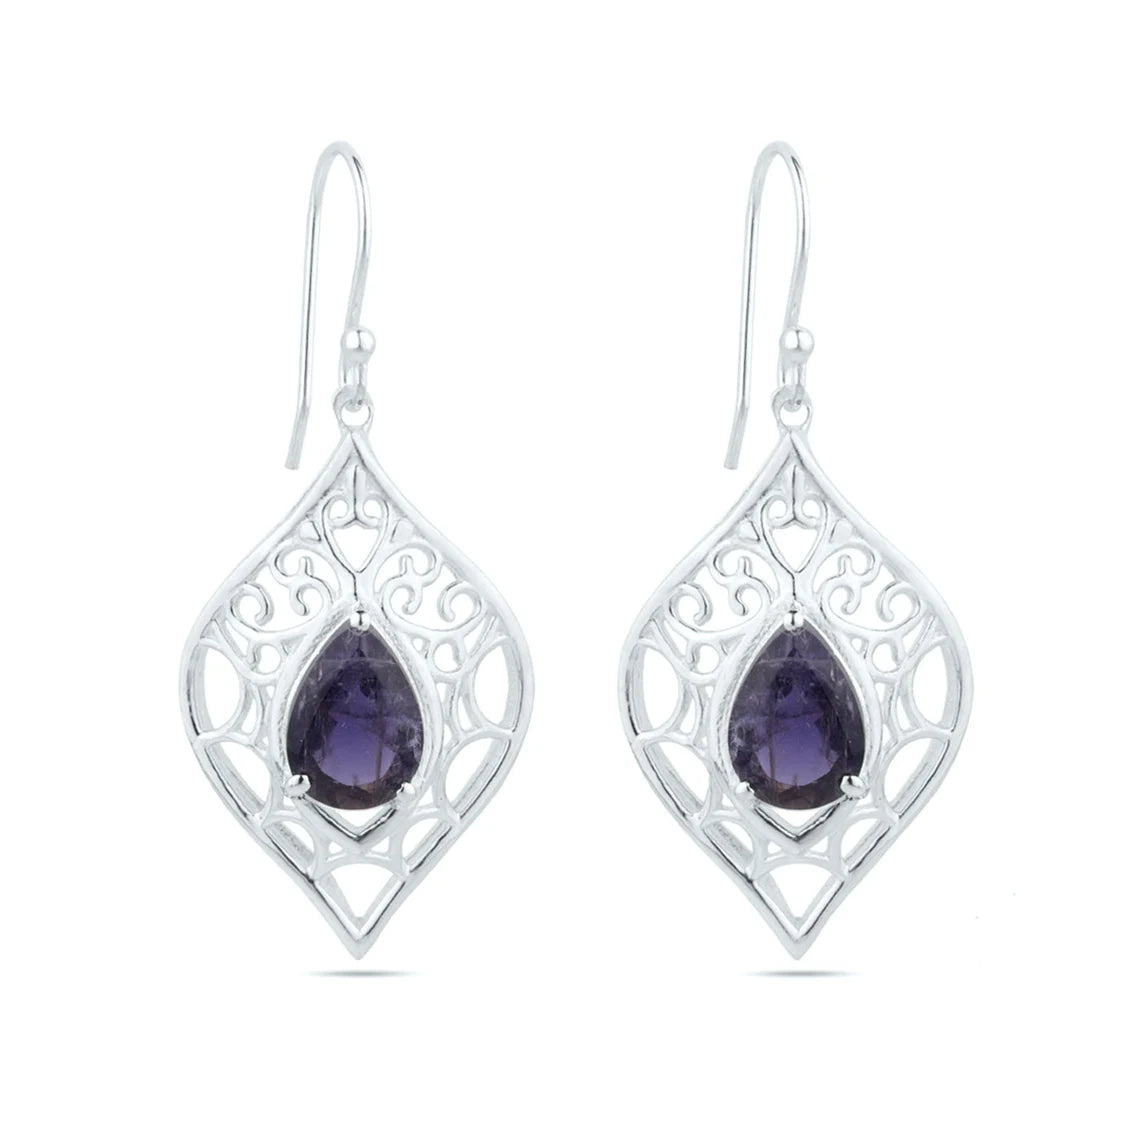 Iolite Gemstone Earrings - 925 Sterling Silver Iolite Earrings - Pear Iolite Silver Earrings - Iolite Hook Earrings - Women's Jewelry